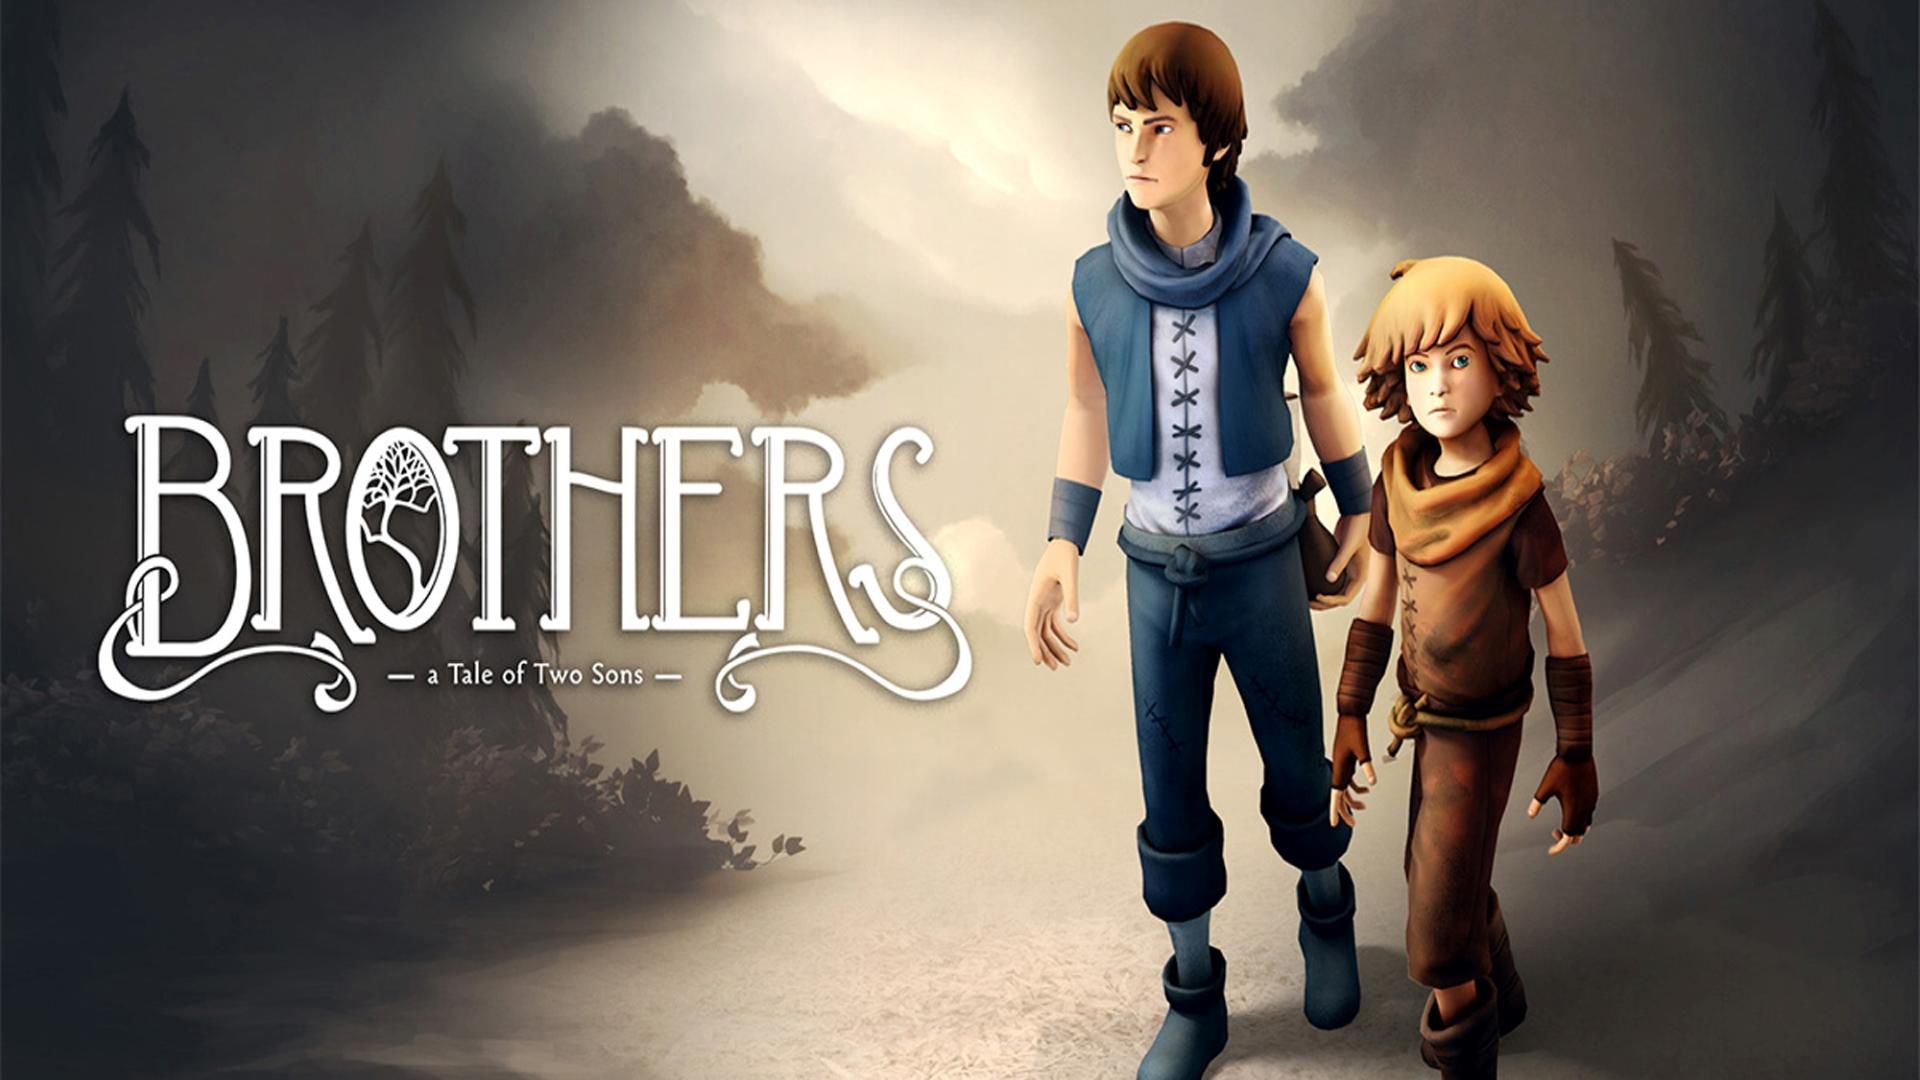 Banner of Brothers: Câu chuyện về hai Con trai 